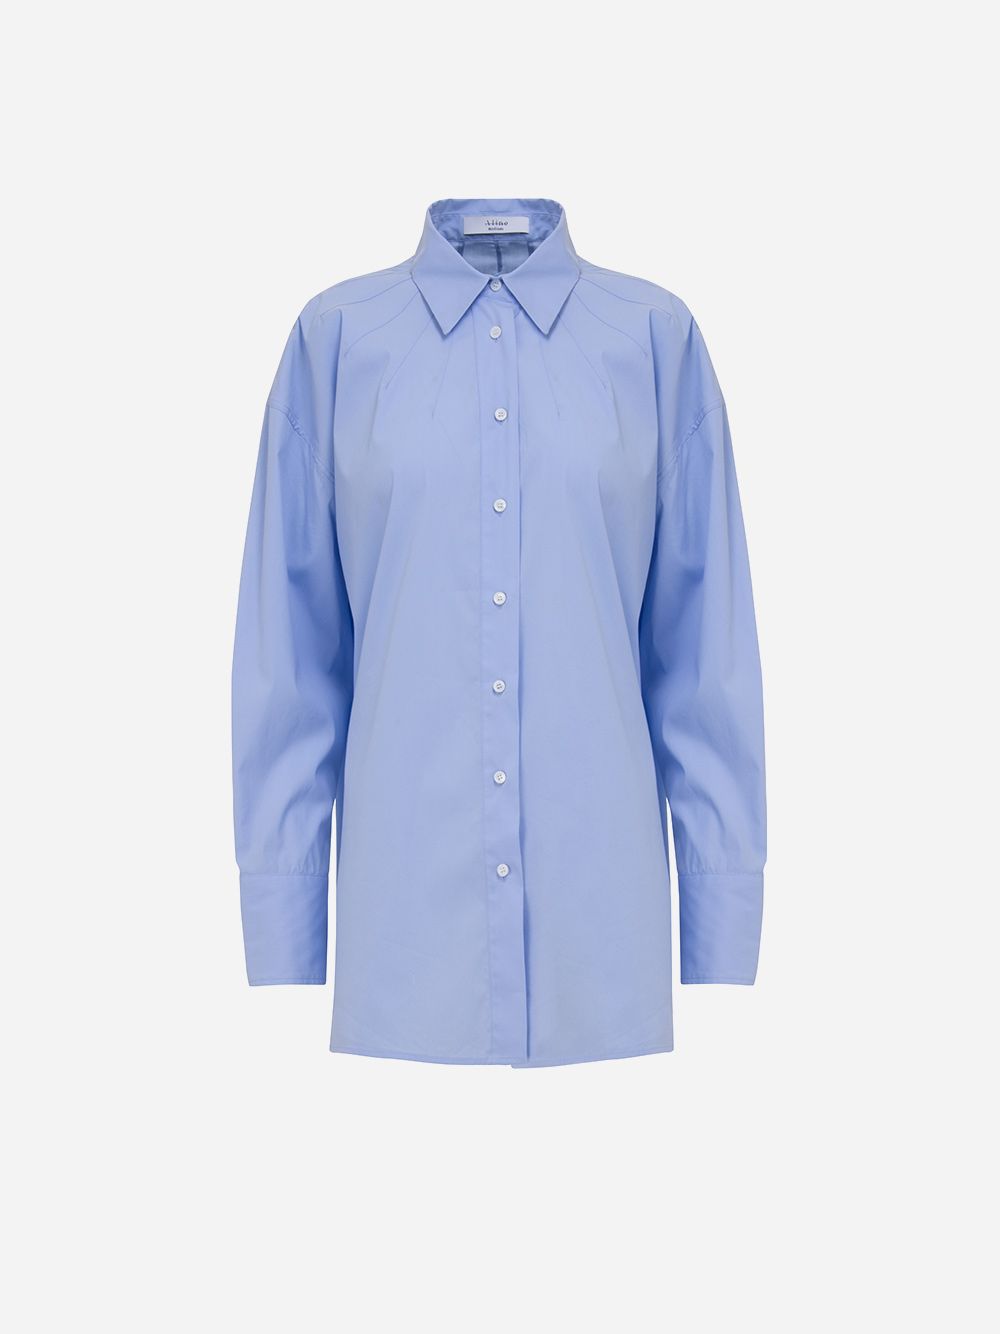 Camisa Azul Essencial 07 | A-line Clothing